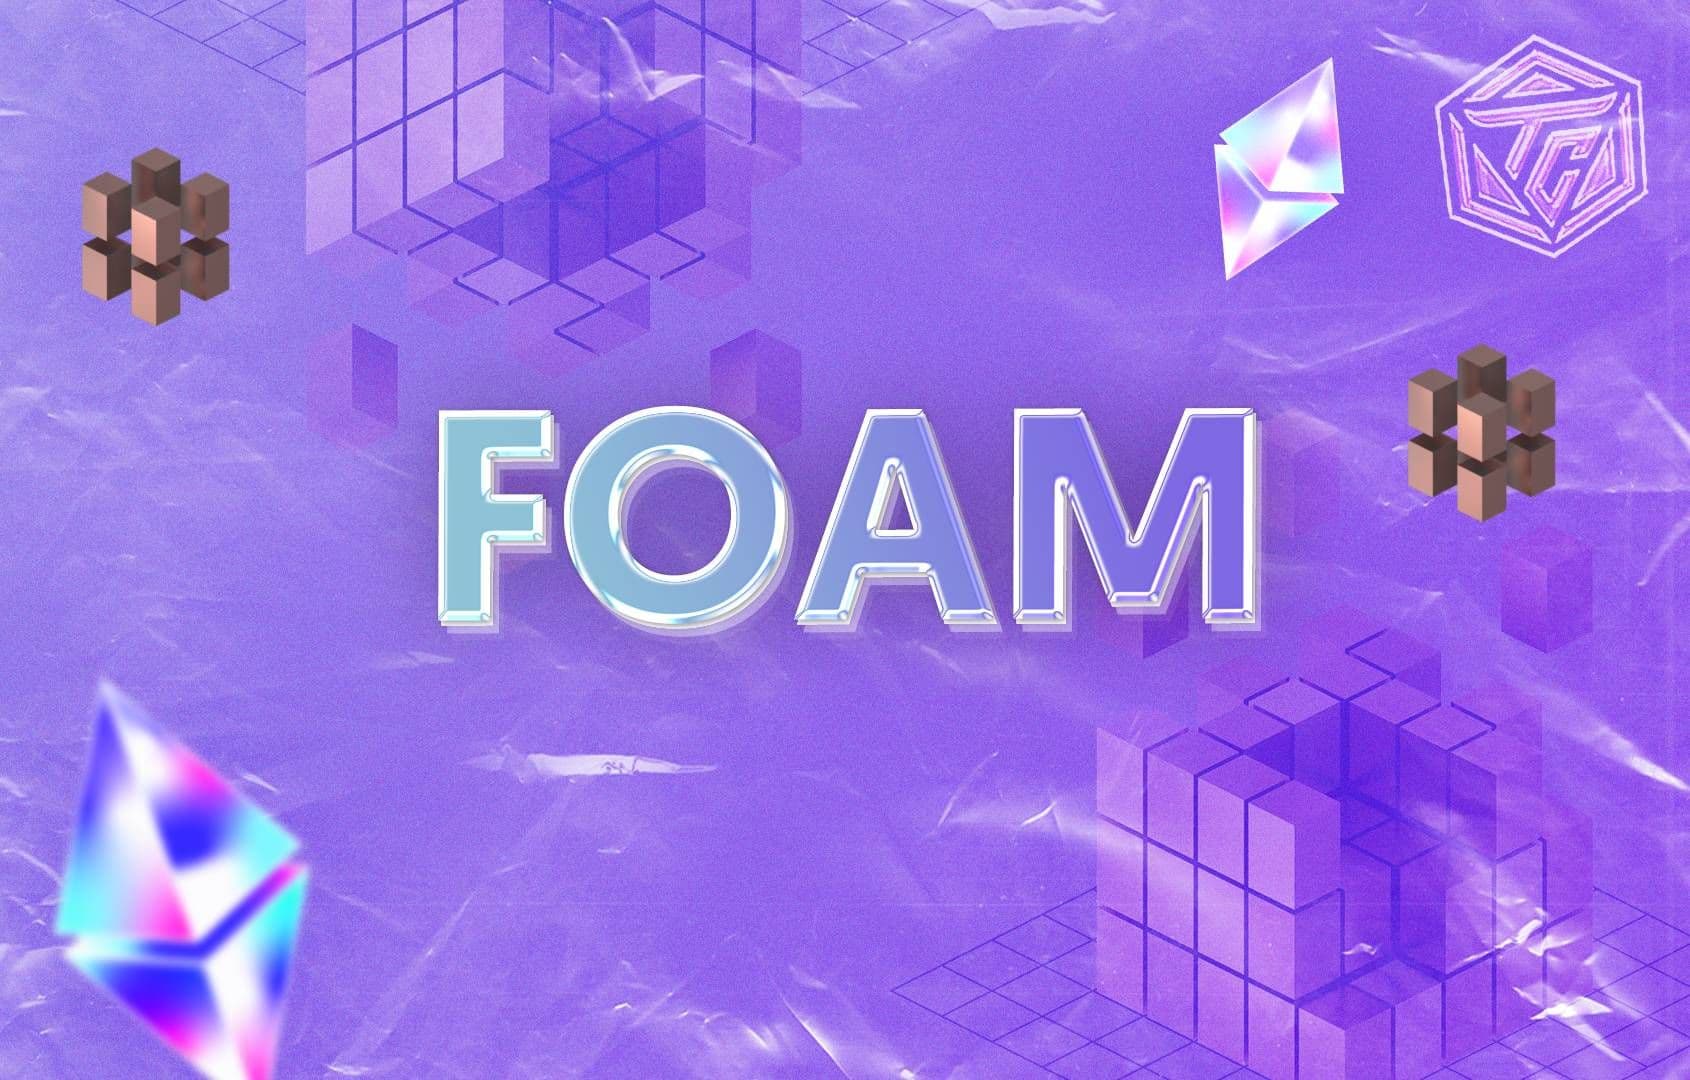 FOAM (FOAM) là gì? Dự án DePIN tiềm năng thay thế Google Maps bằng cách ứng dụng công nghệ blockchain